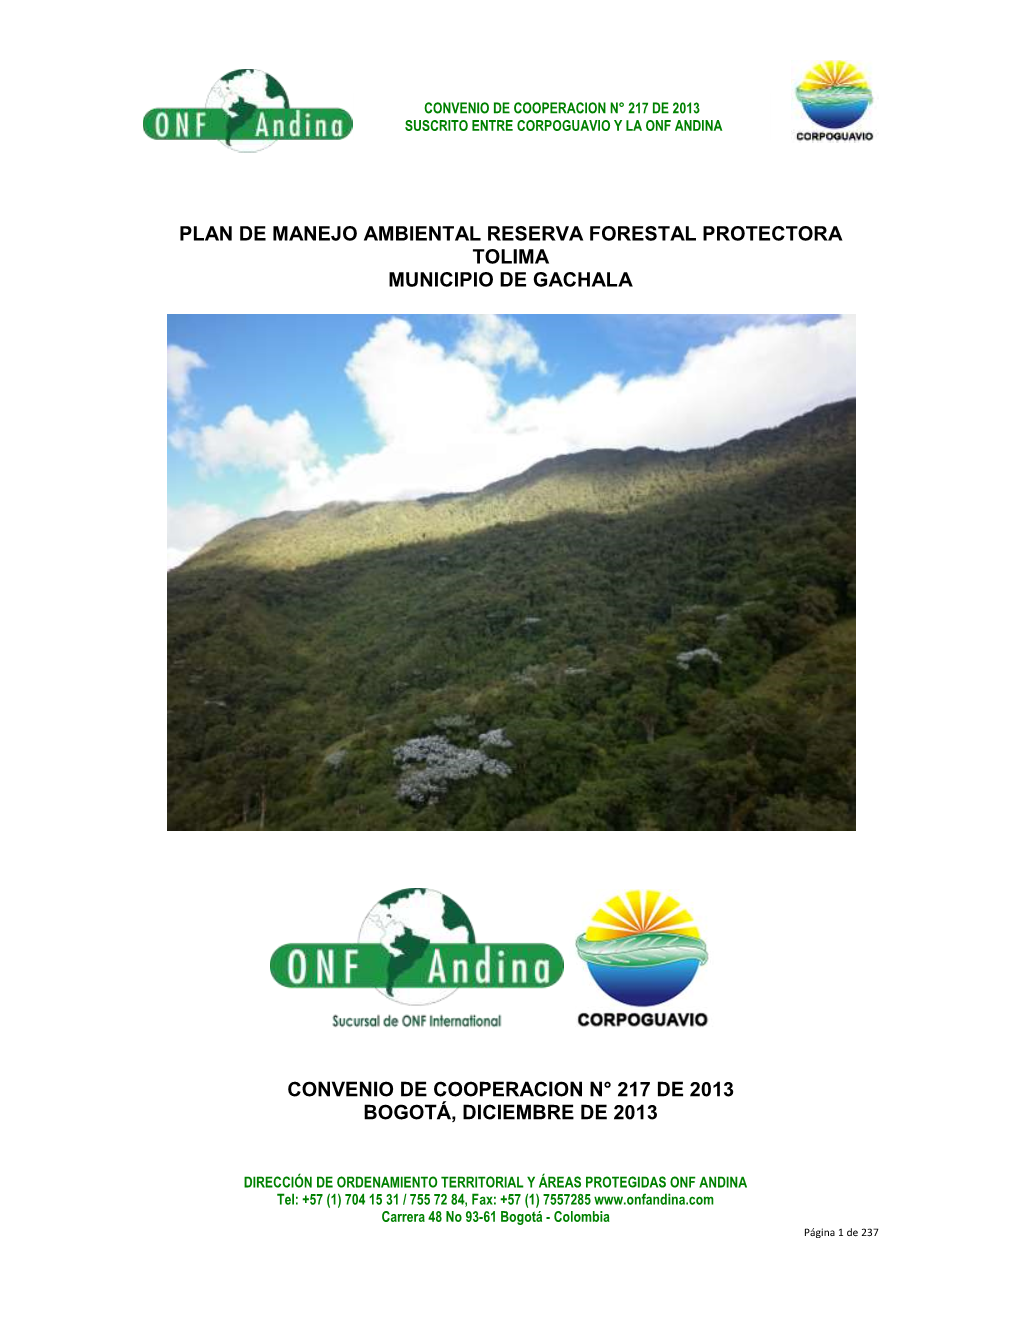 Plan De Manejo Ambiental Reserva Forestal Protectora Tolima Municipio De Gachala Convenio De Cooperacion N° 217 De 2013 Bogot